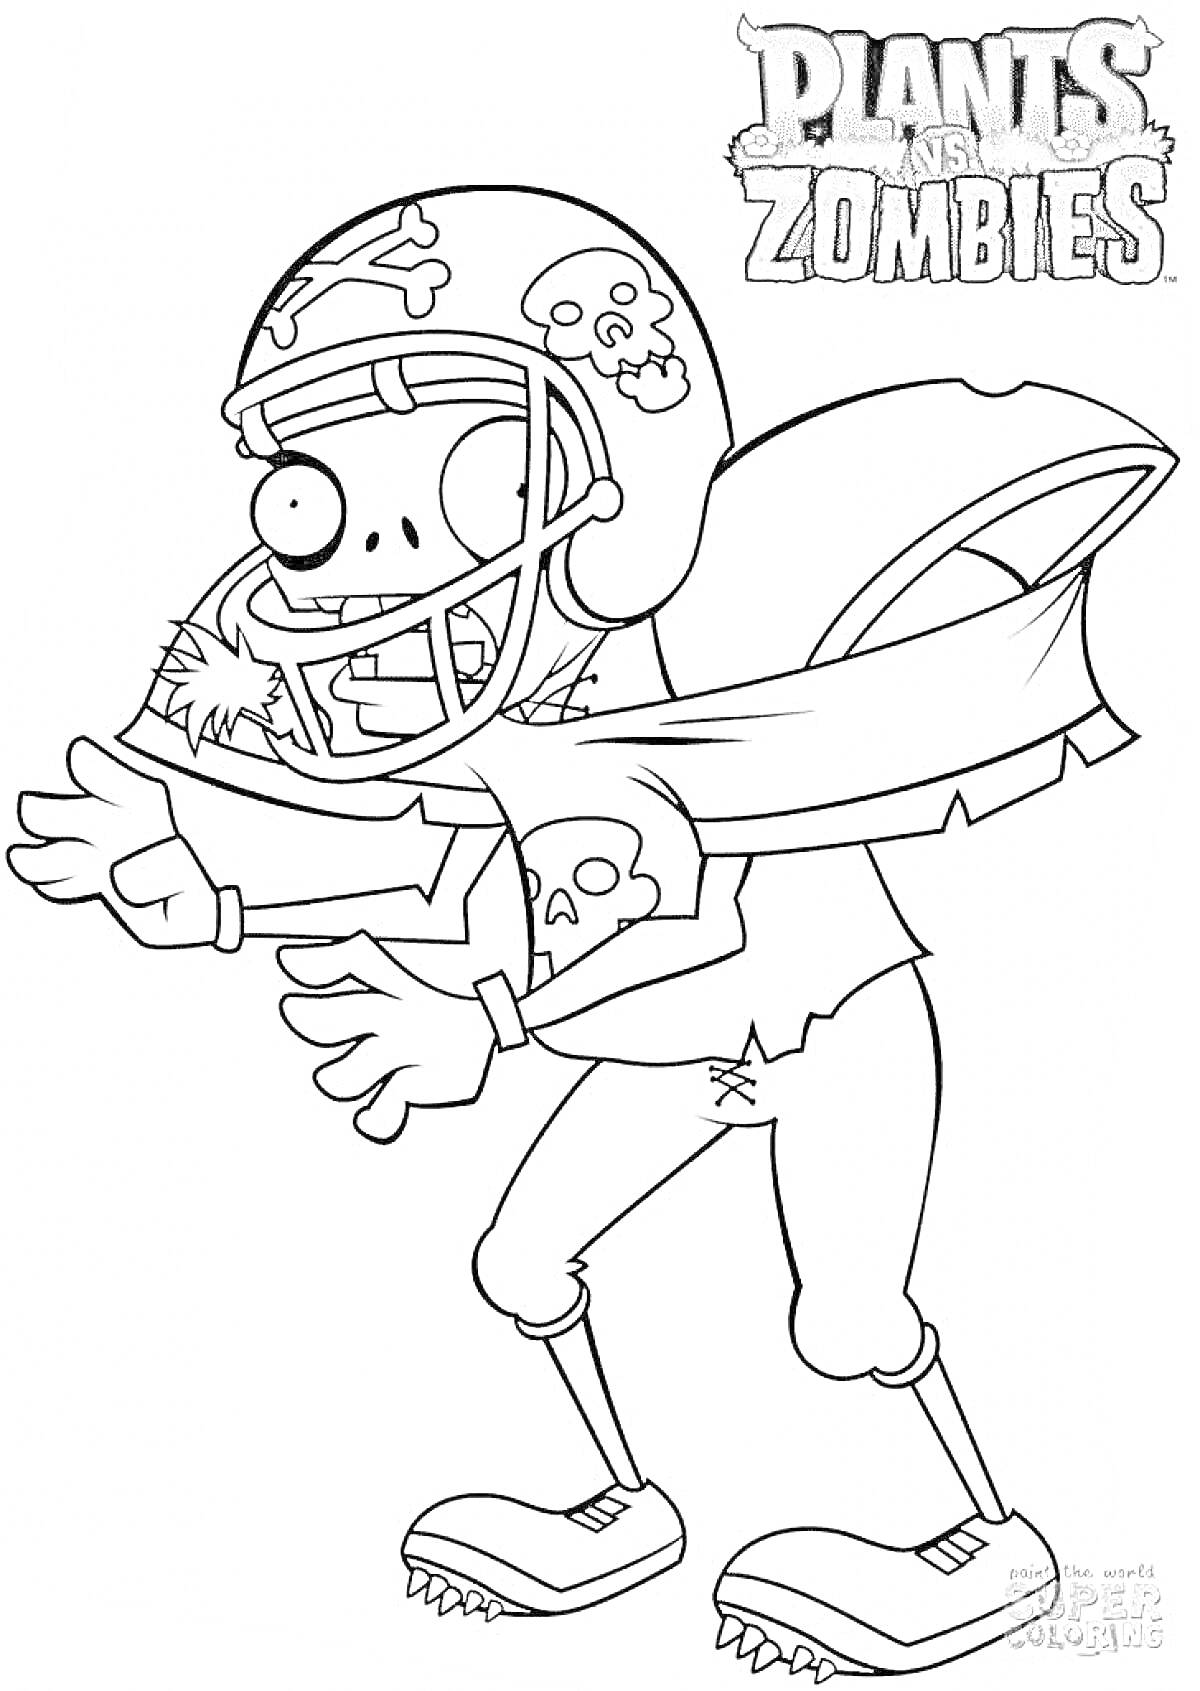 Раскраска Зомби-футболист из Plants vs Zombies, пустой шлем с черепами, порванная футболка, жесткие штаны, ботинки с шипами